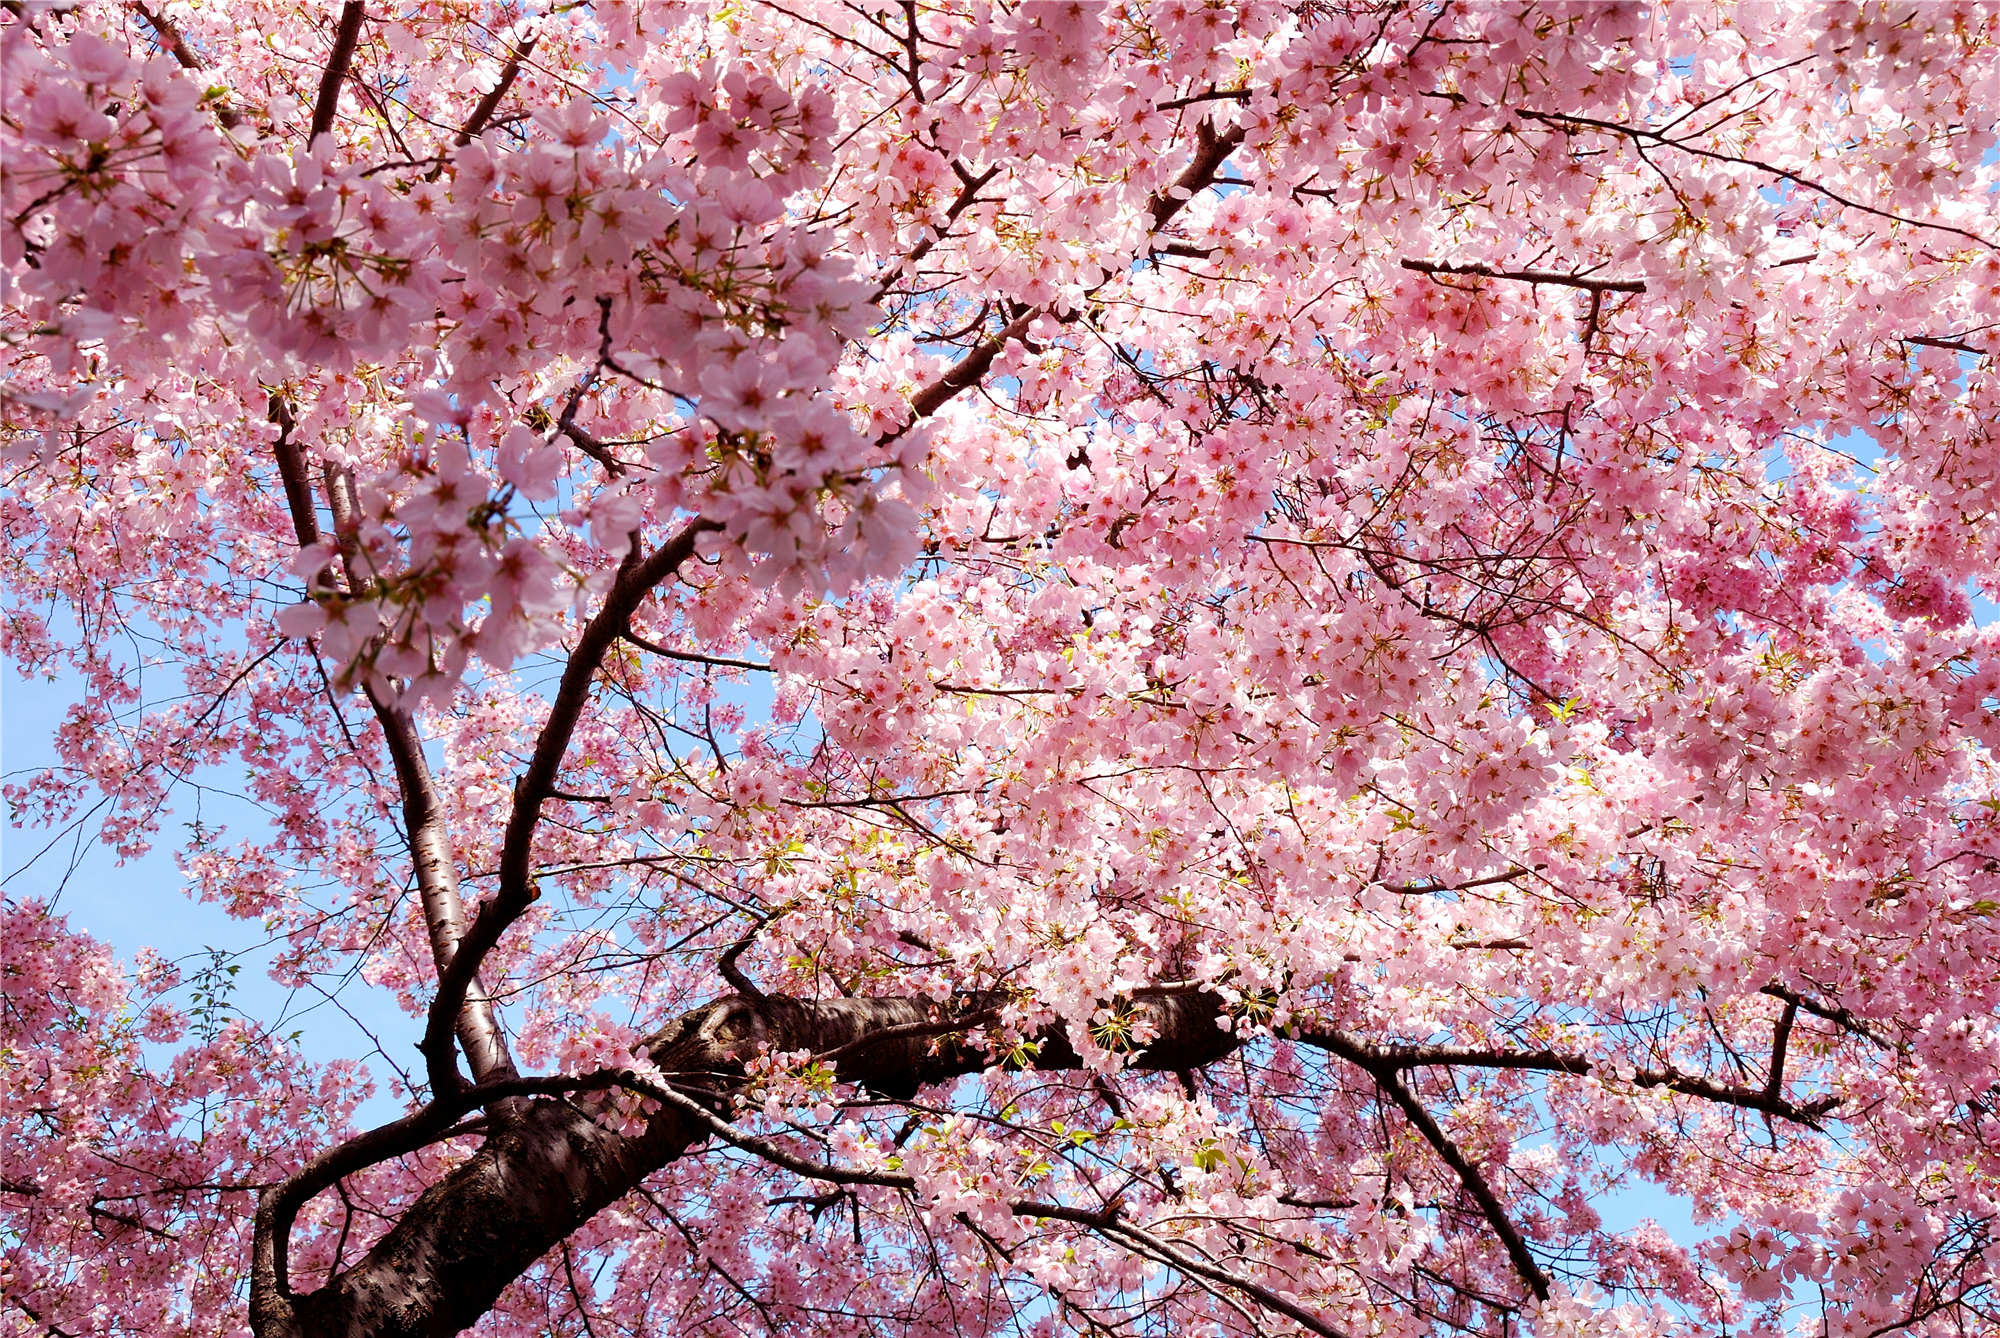 带你看六张樱花美图:粉色花海,让人陶醉,情侣旅游胜地